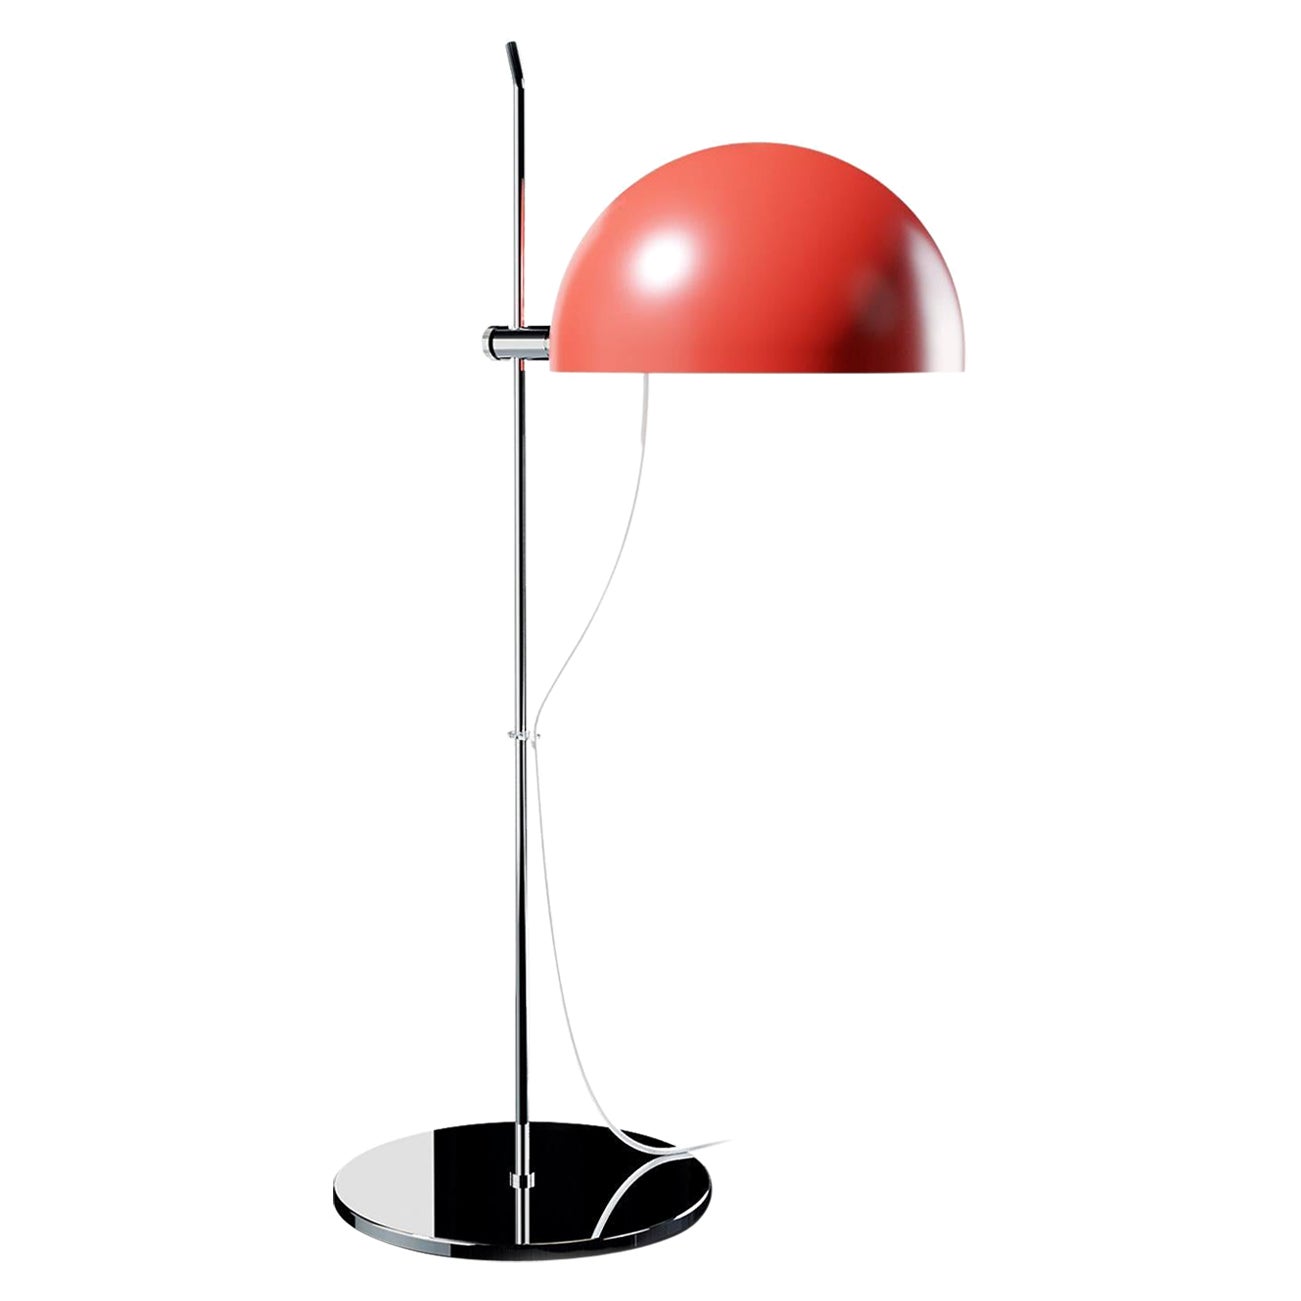 Alain Richard 'A21' Desk Lamp in Red for Disderot For Sale